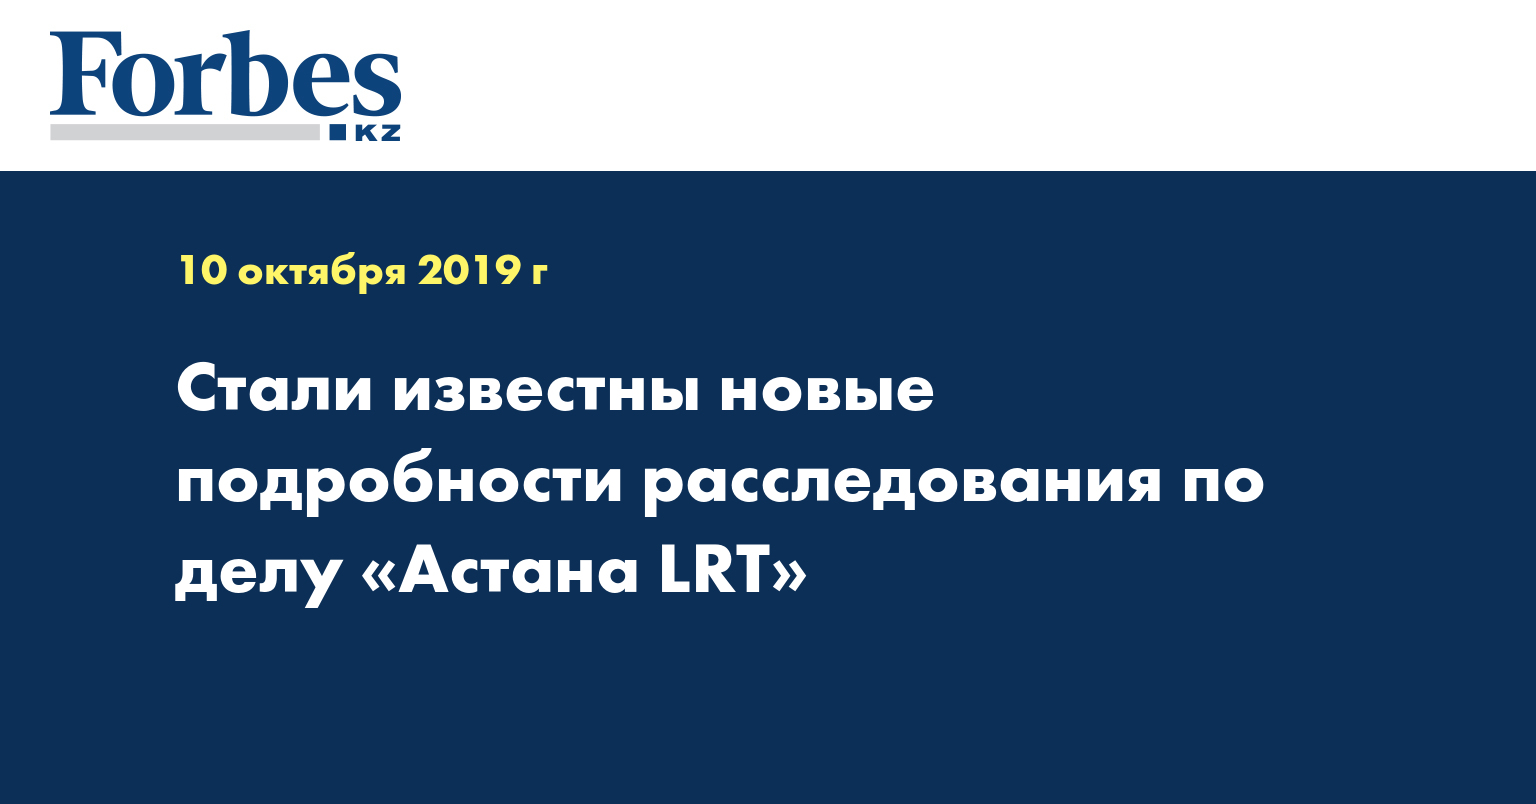 Стали известны новые подробности расследования по делу «Астана LRТ»